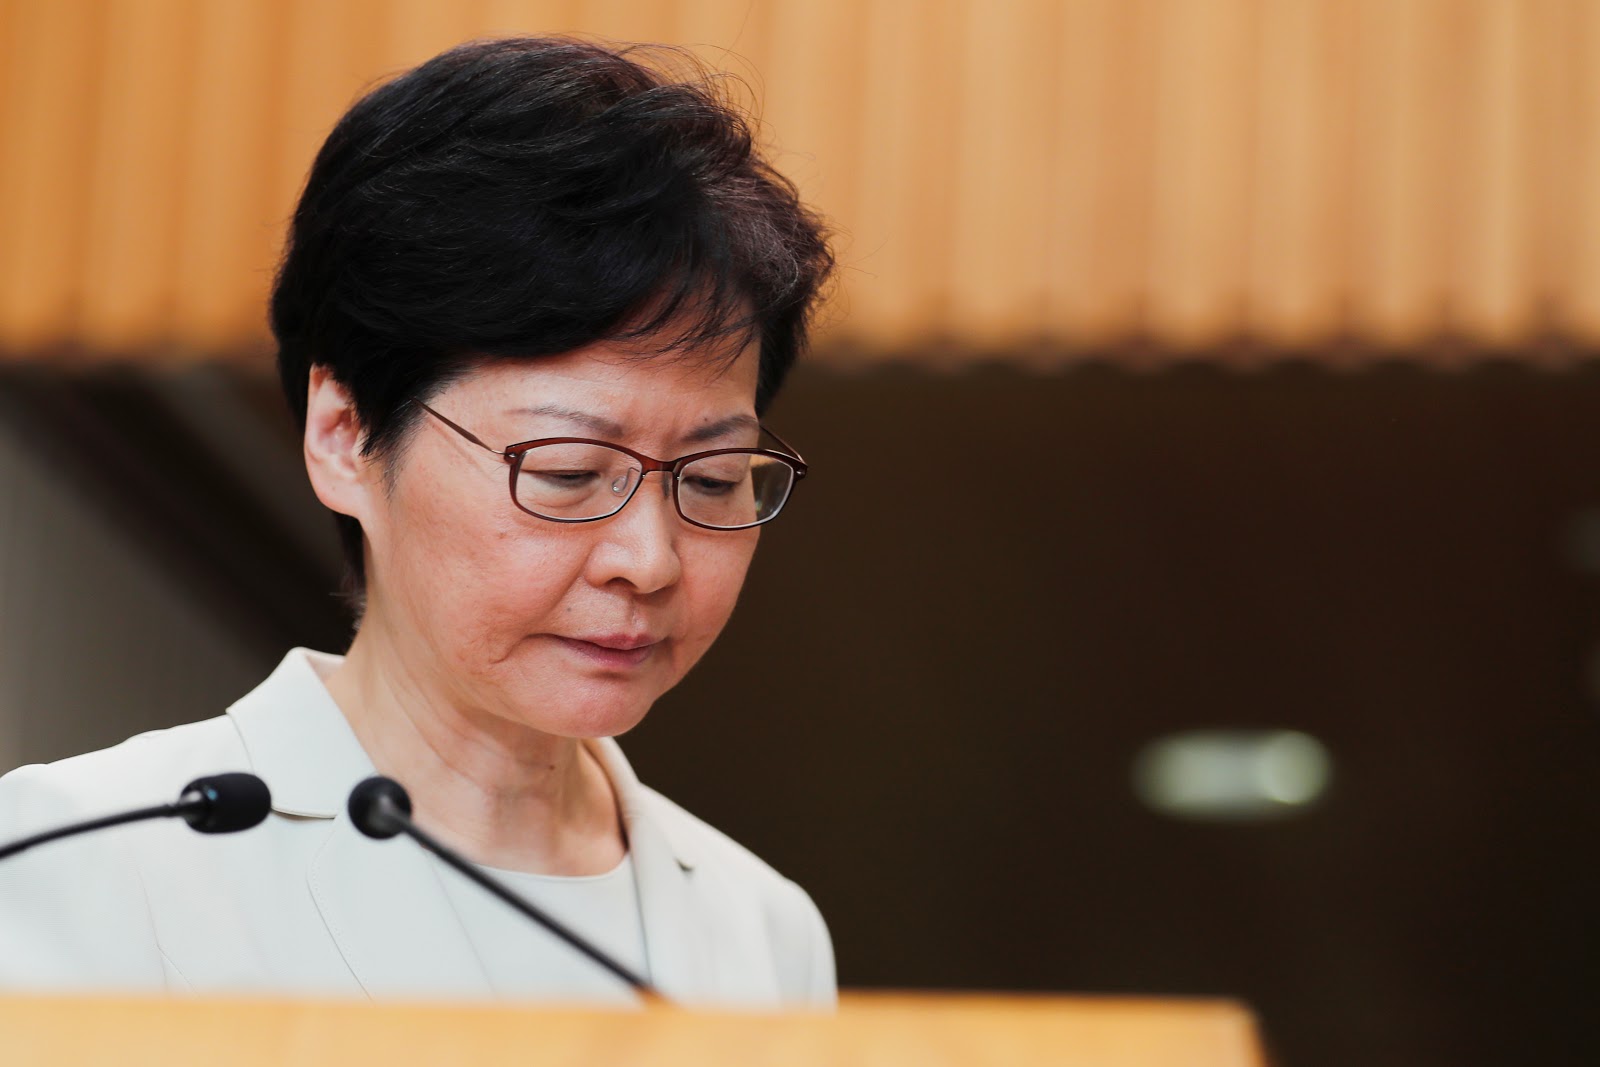 В Гонконге на год переносят выборы в законодательный совет из-за пандемии COVID-19